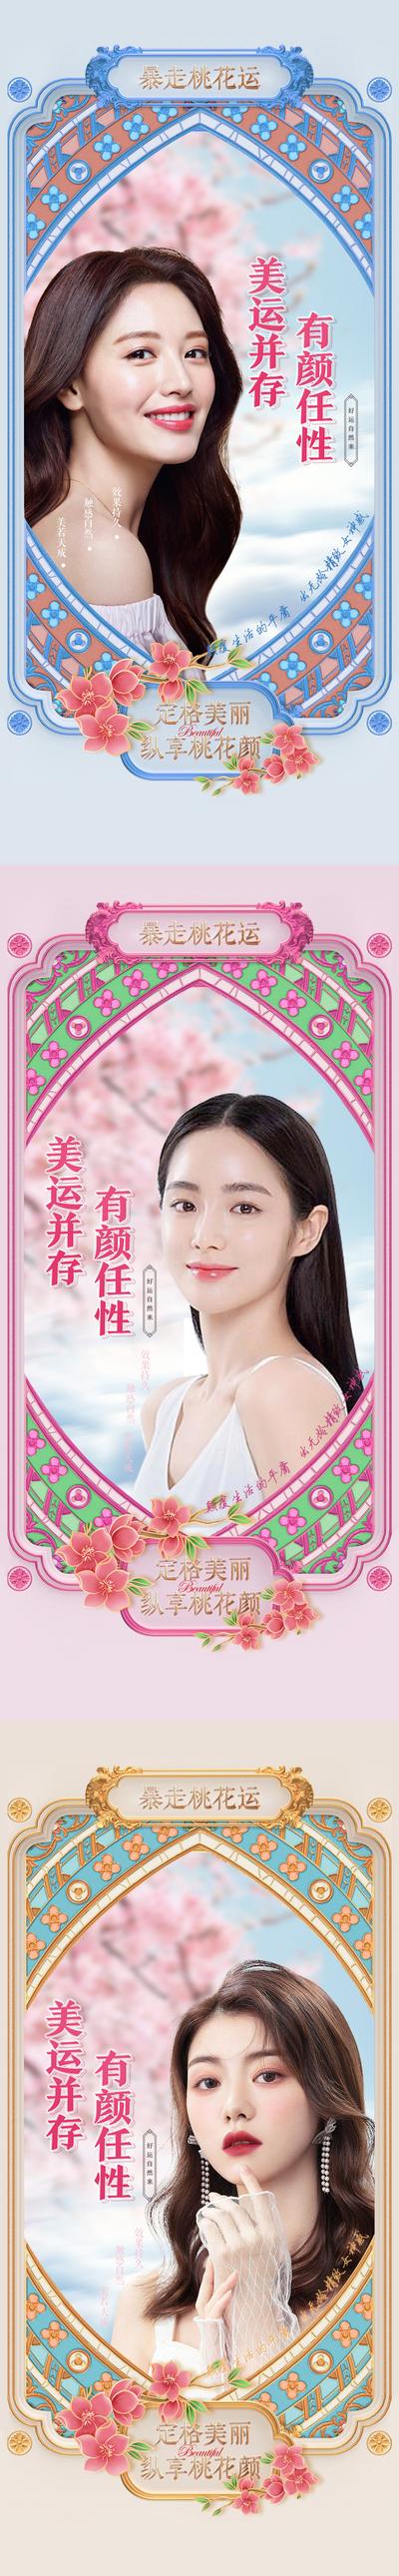 南门网 广告 海报 地产 人物 定格 美丽 青春 桃花运 相框 系列